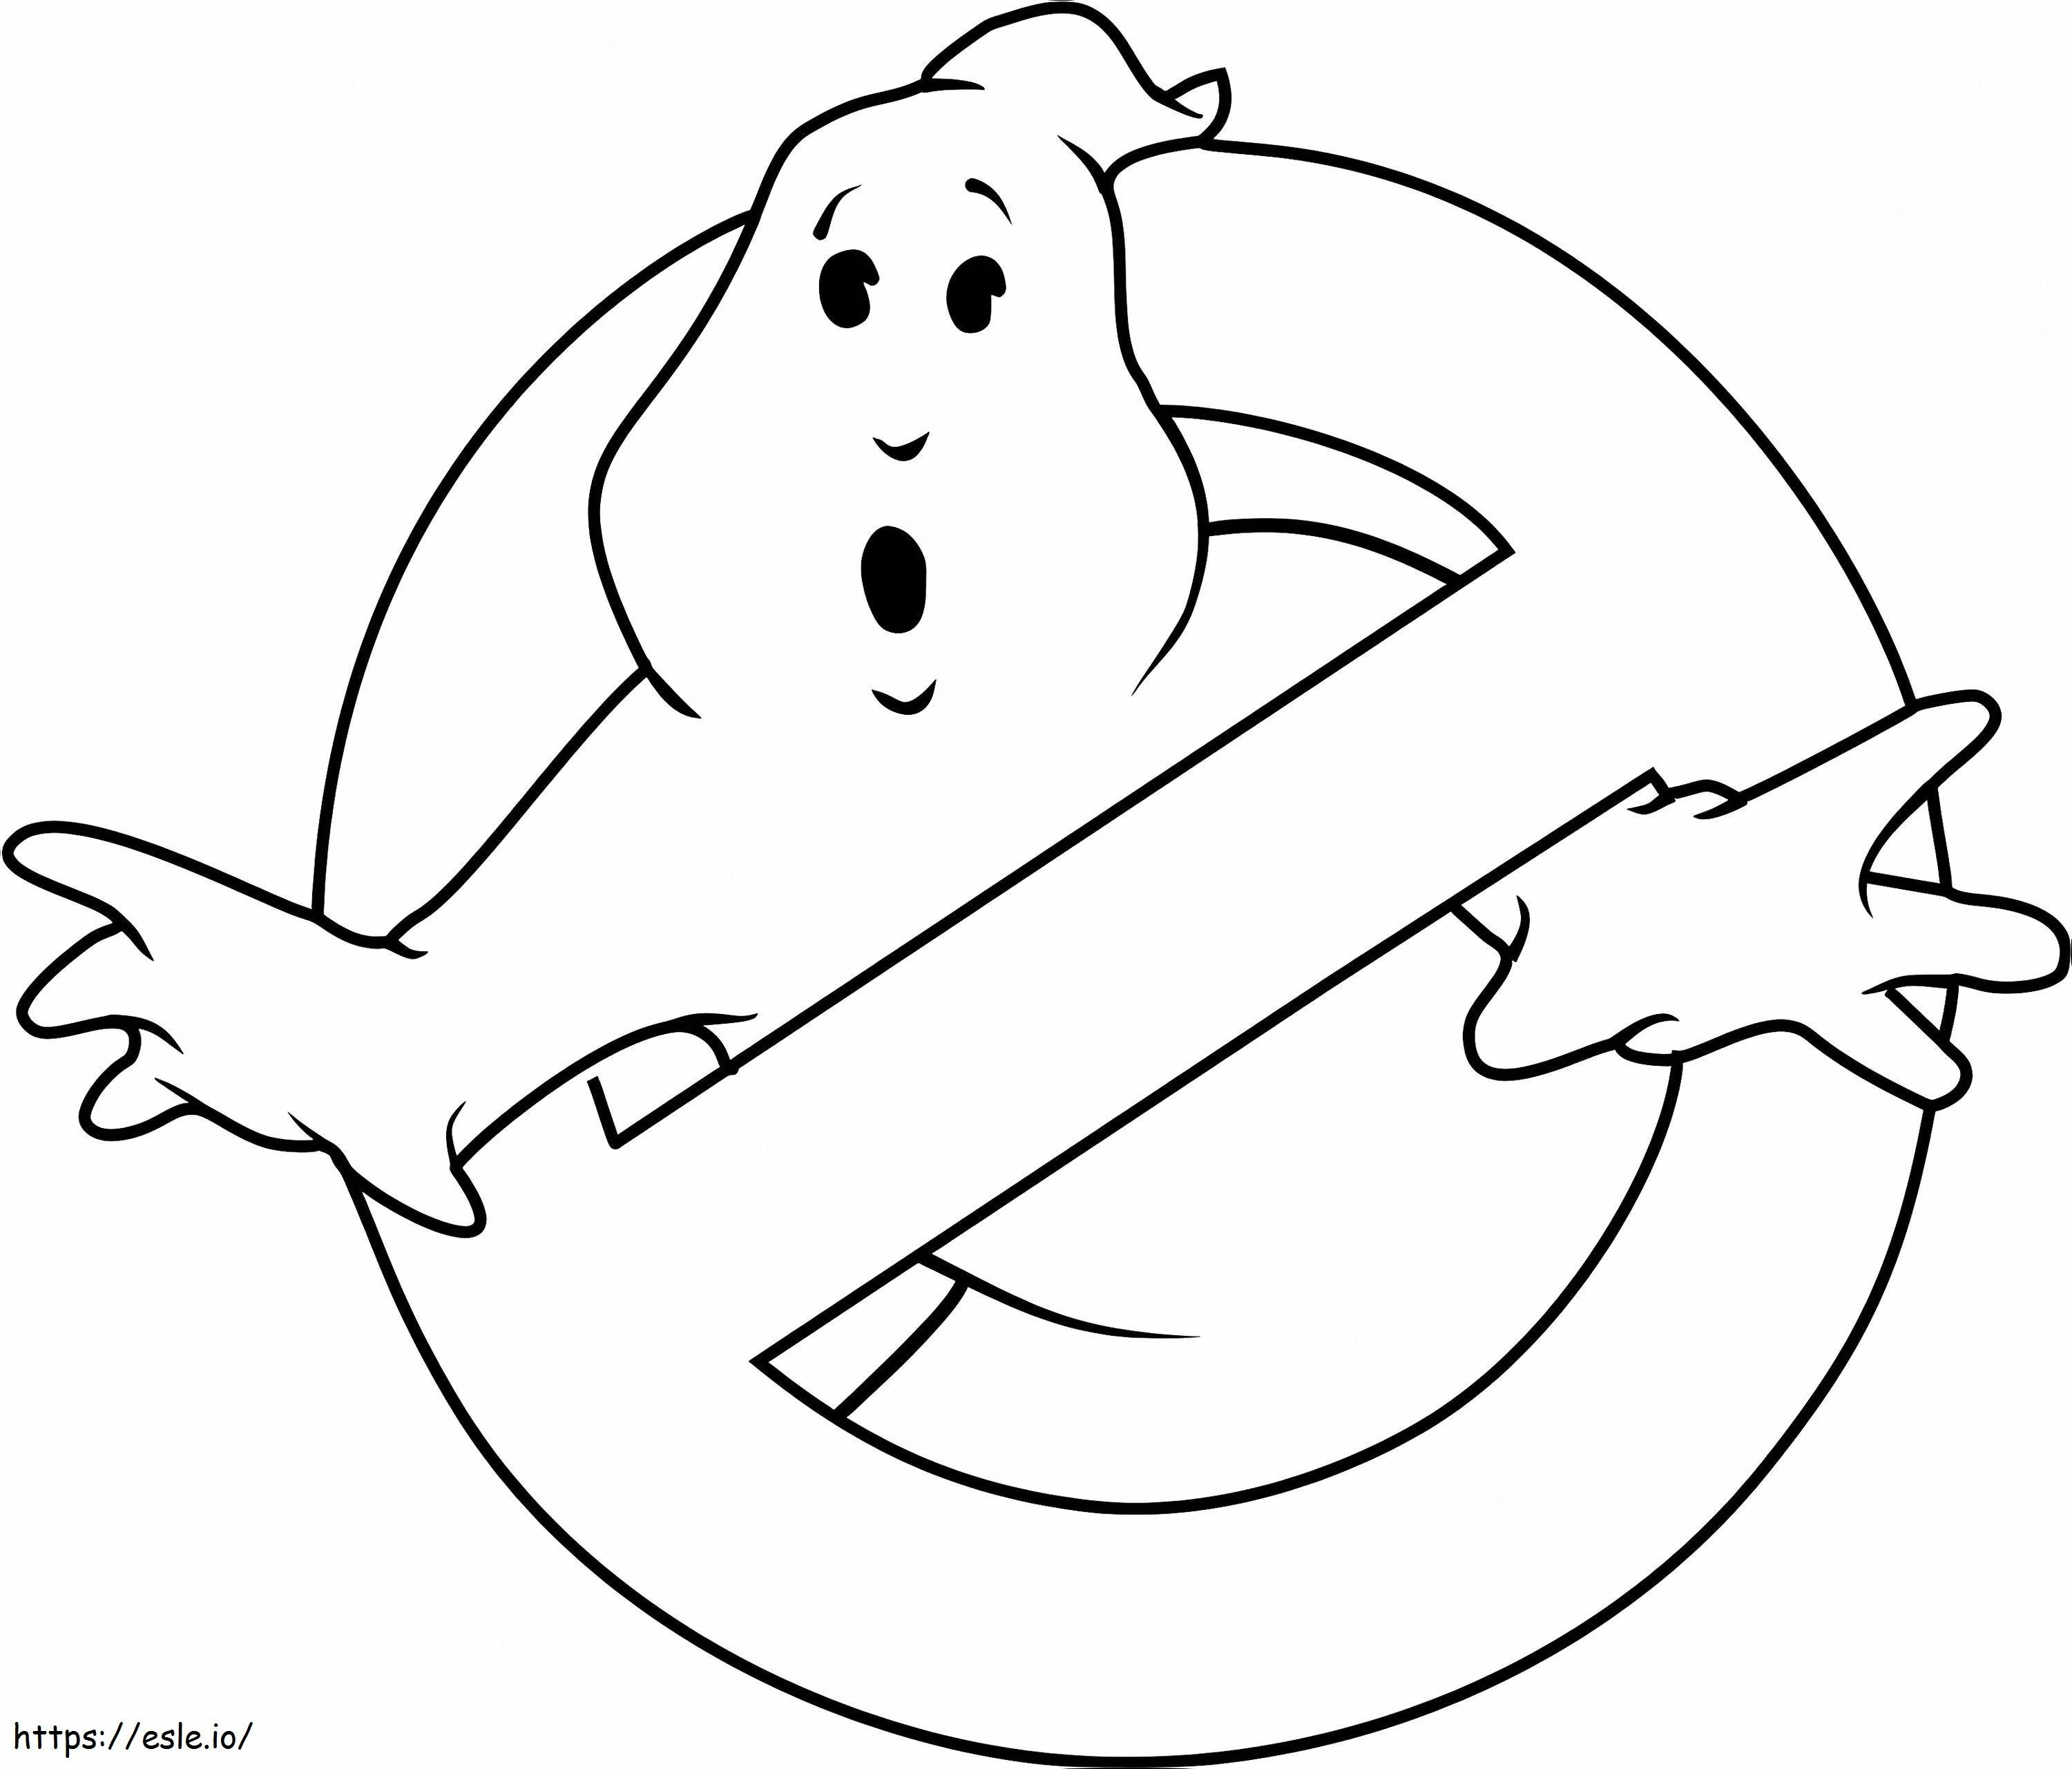 1532145428 Logo von Ghostbusters A4 ausmalbilder